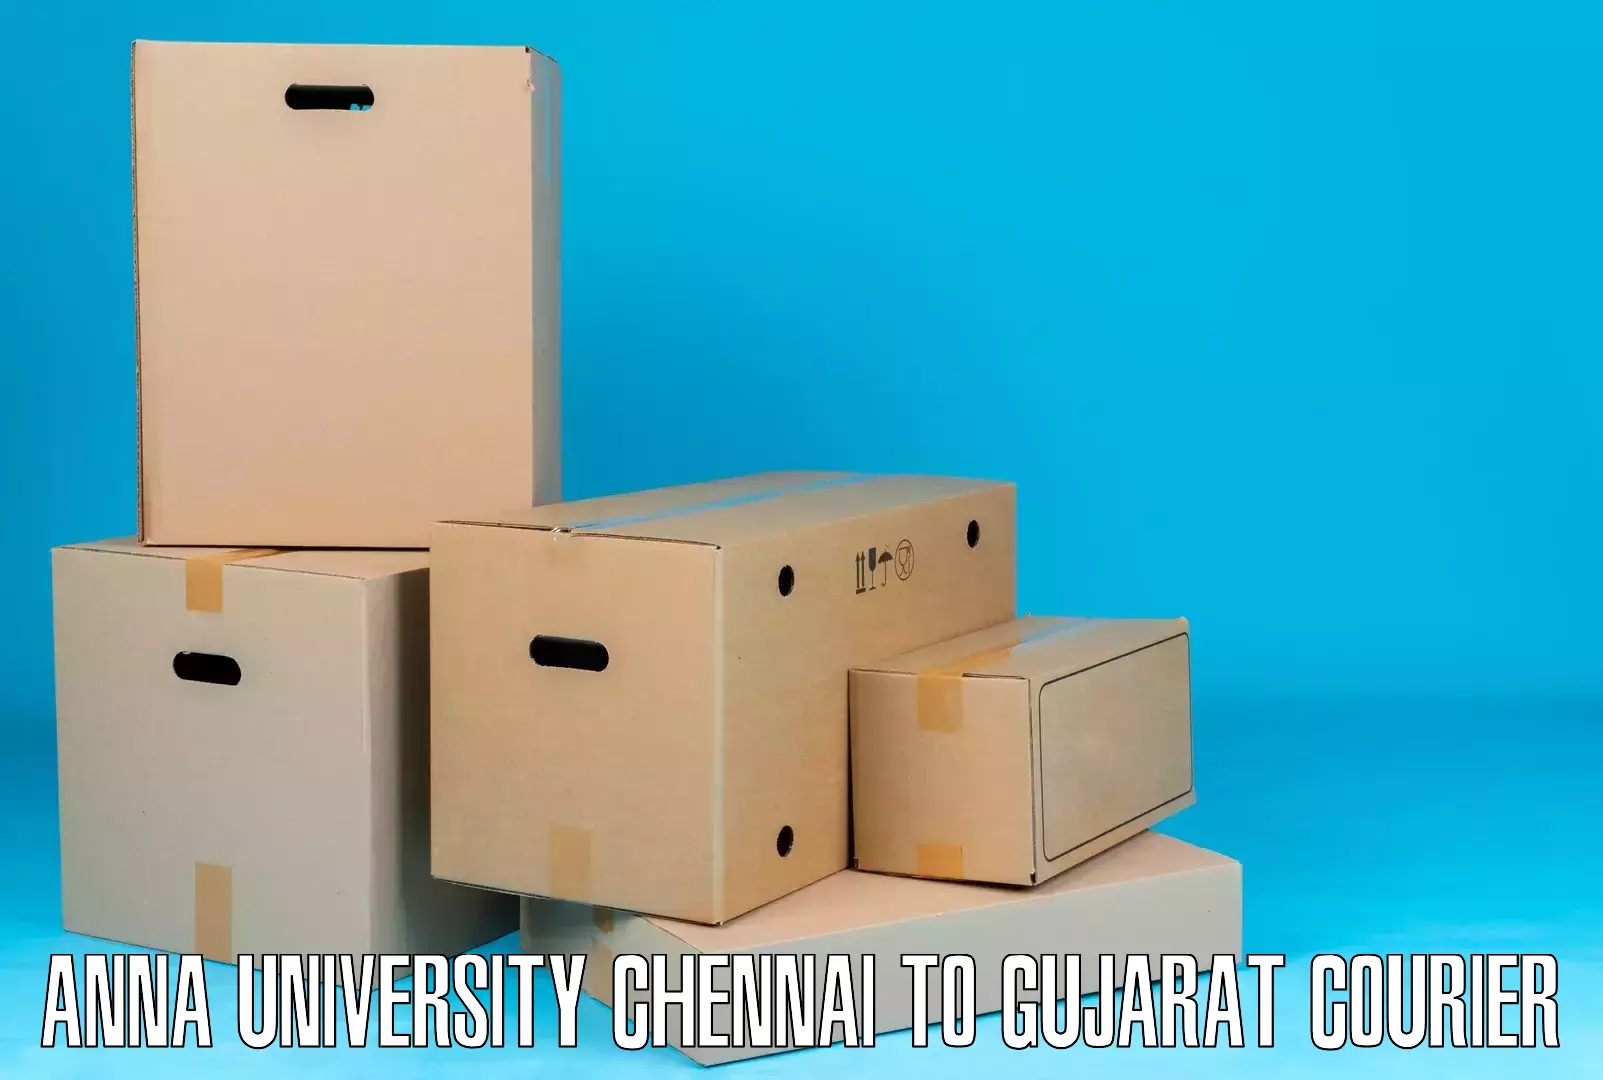 Ocean freight courier Anna University Chennai to Botad